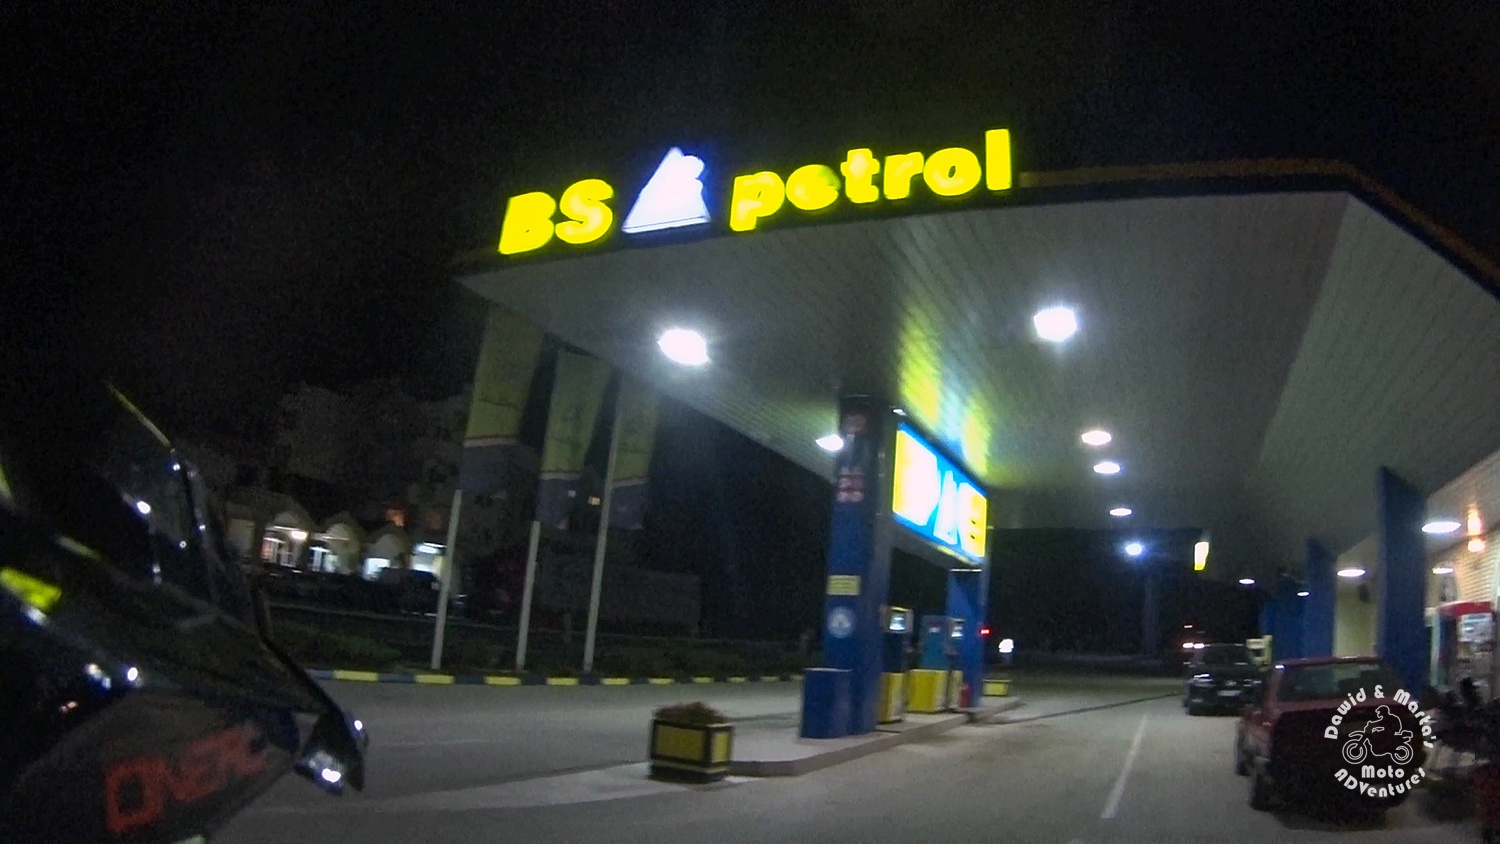 Braća Sekulić petrol station in Bela Zemlya